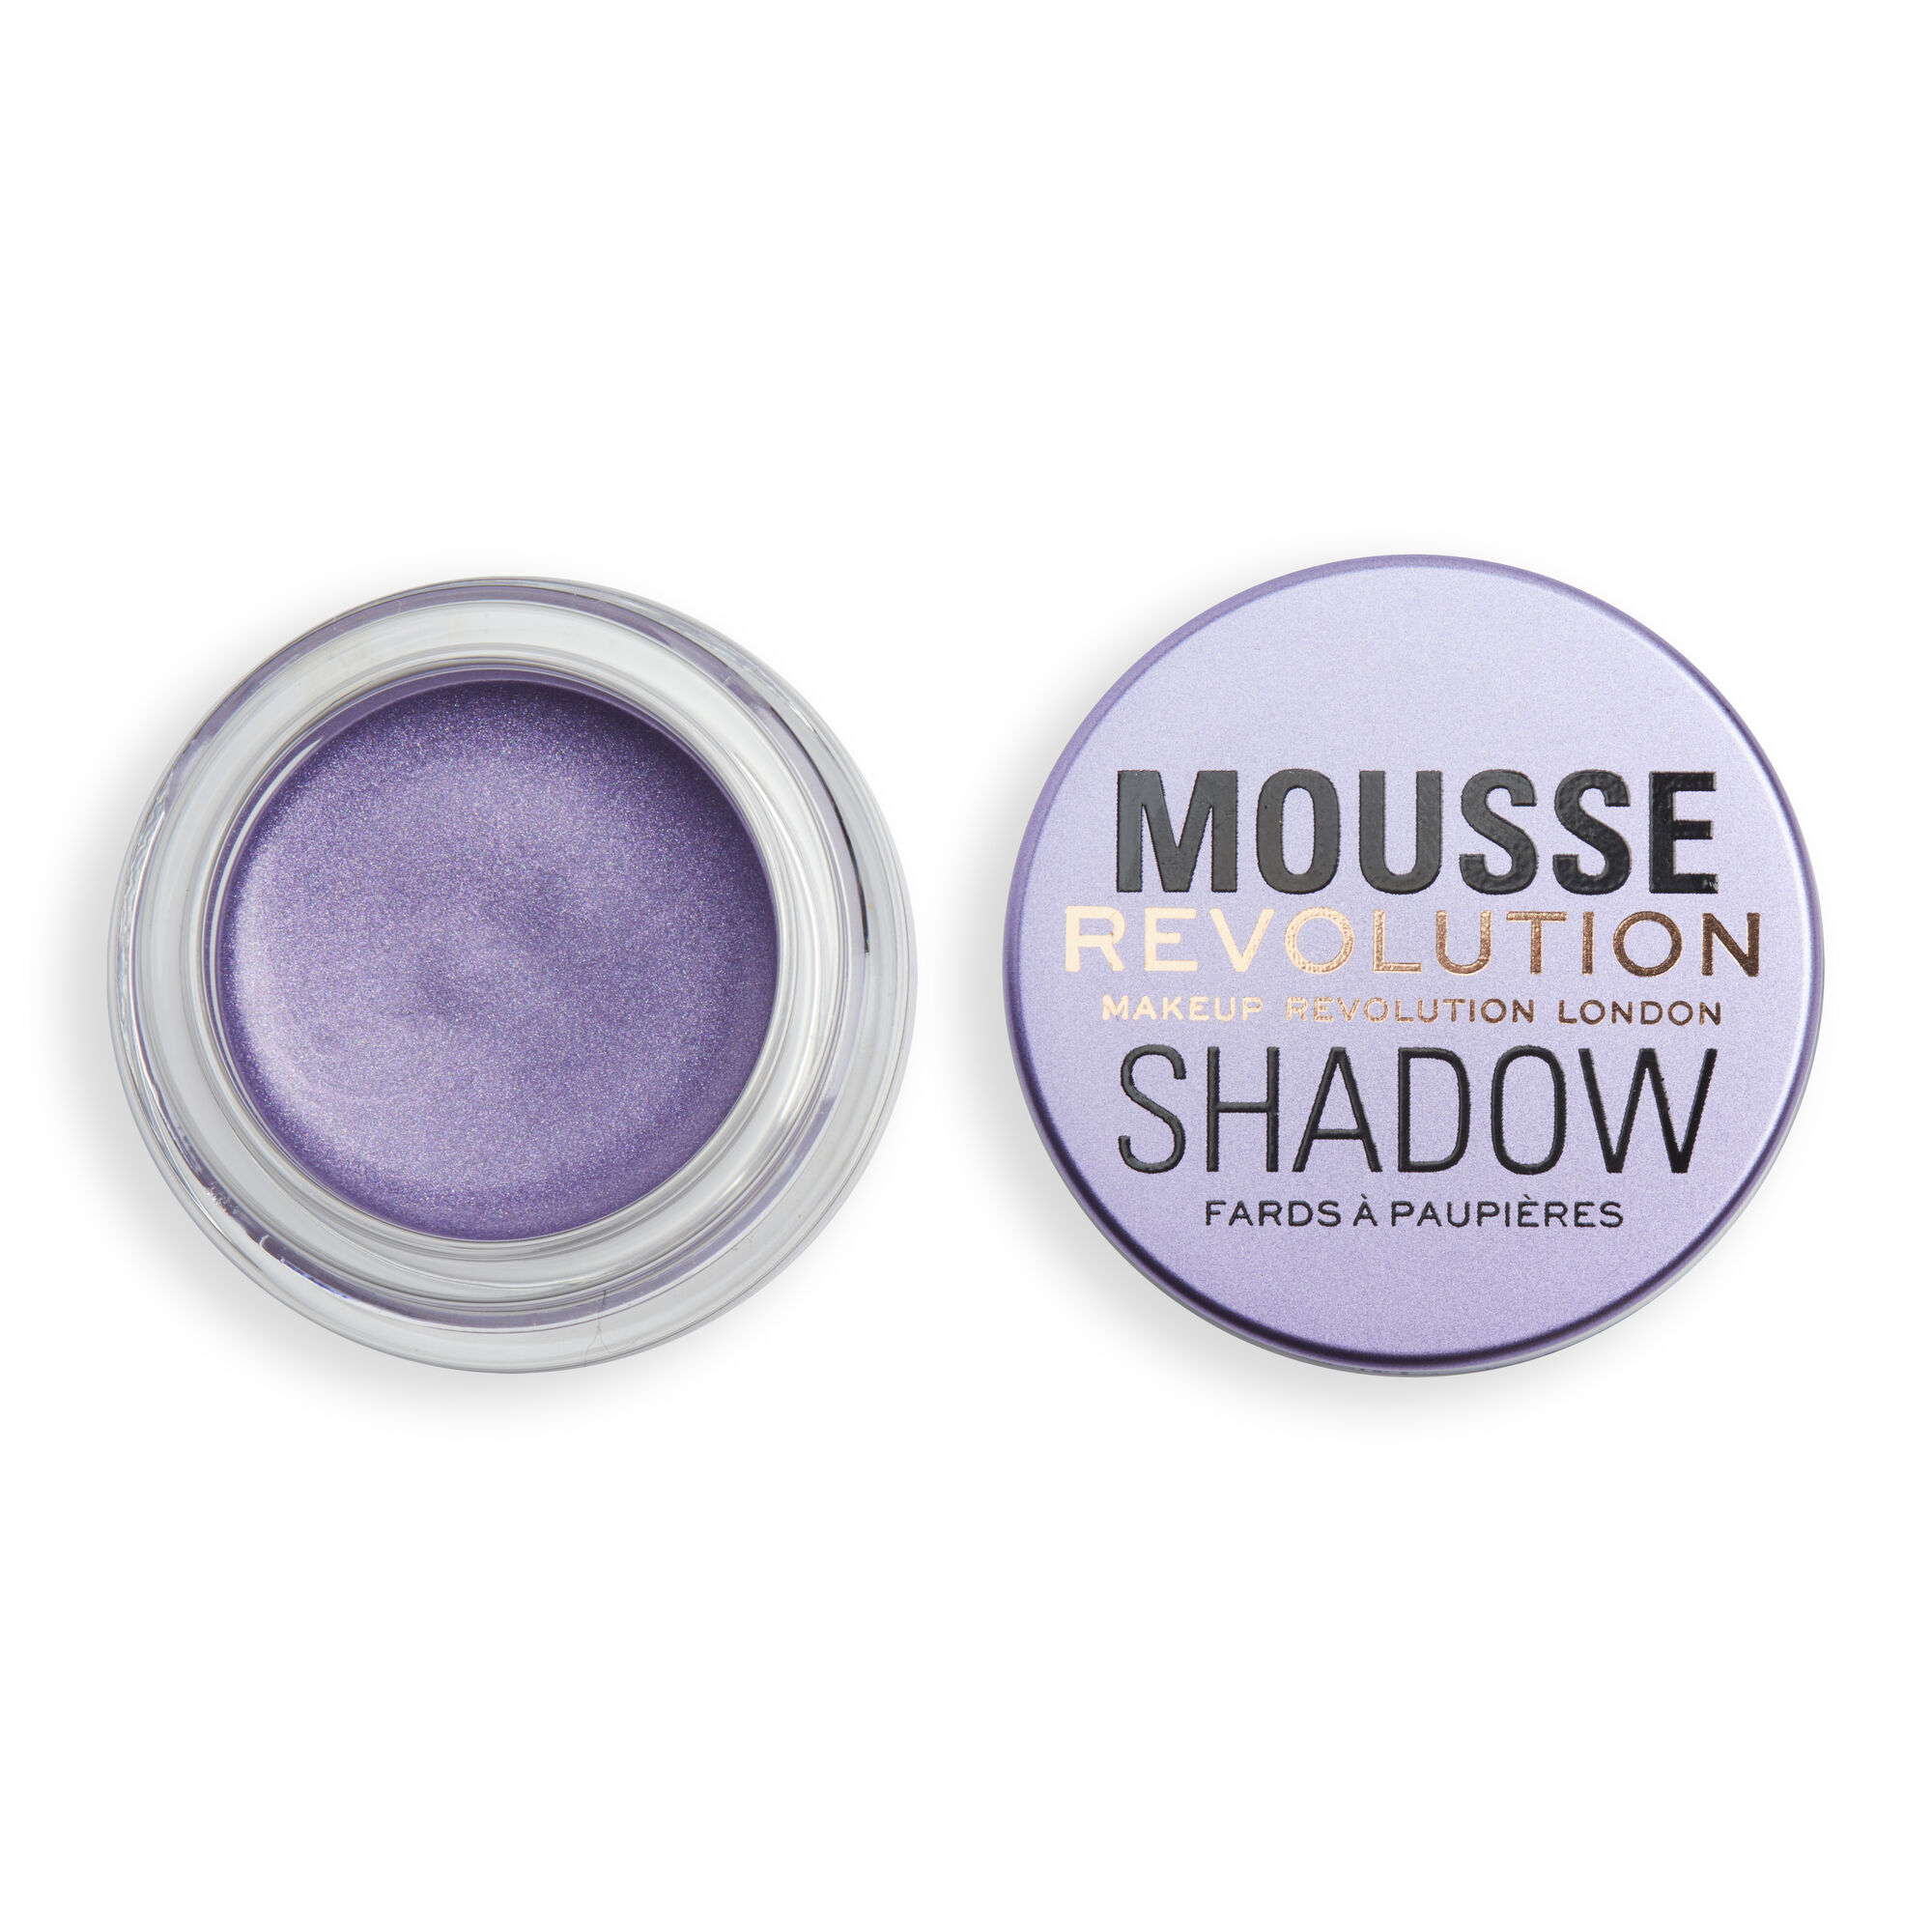 Тени Revolution Makeup кремовые для век Mousse Cream Eyeshadow, Lilac песочная фреска мечтательный лисёнок